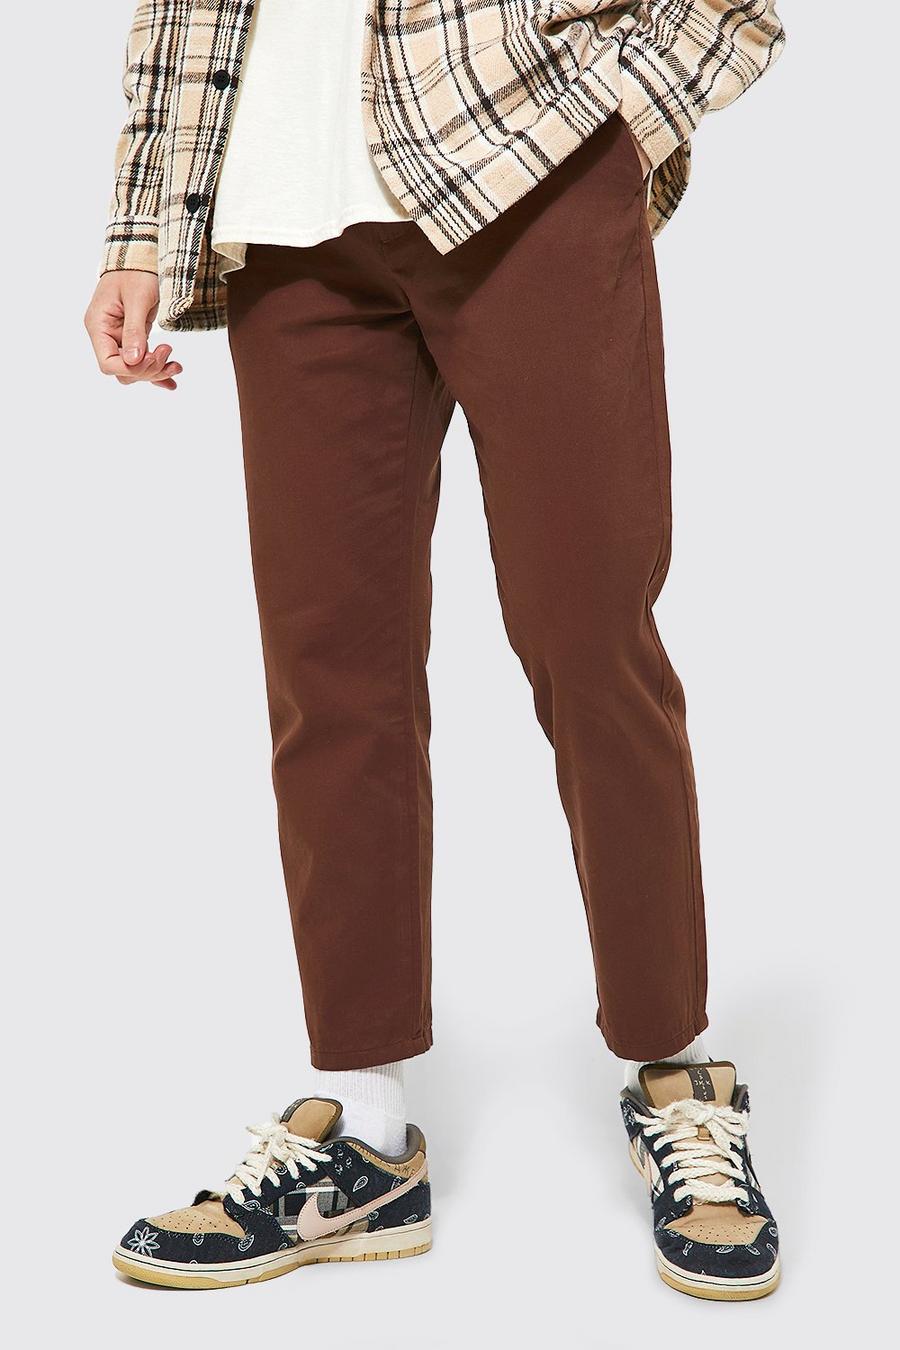 שוקולד marrón מכנסי צ'ינו בגזרת קרסול צרה